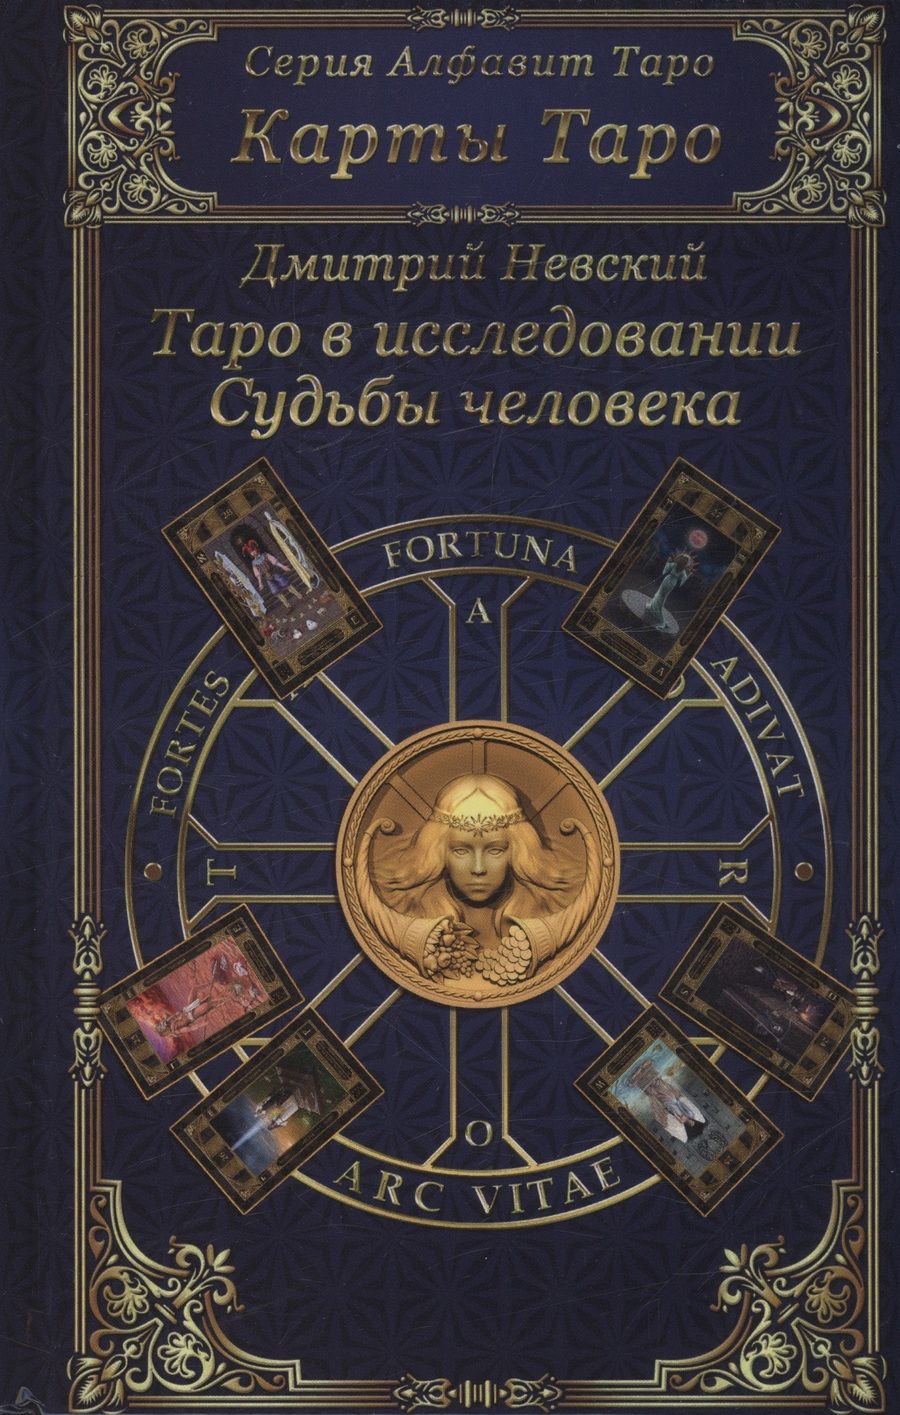 Обложка книги "Невский: Карты Таро. Таро в исследовании Судьбы человека"